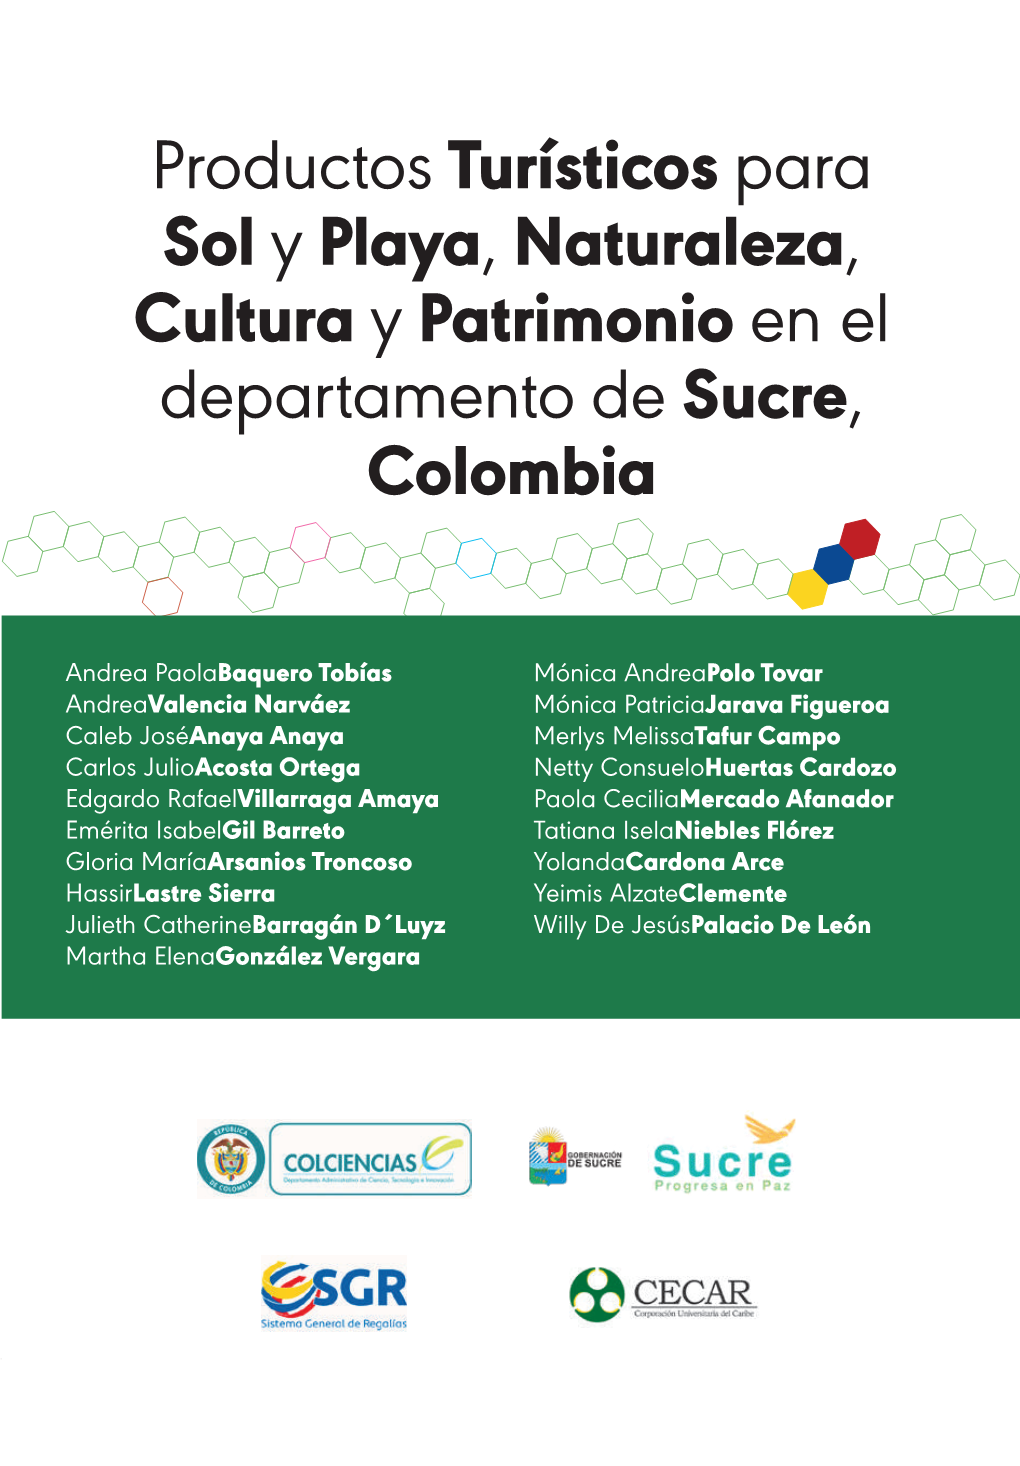 Productos Turísticos Para Sol Y Playa, Naturaleza, Cultura Y Patrimonio En El Departamento De Sucre, Colombia